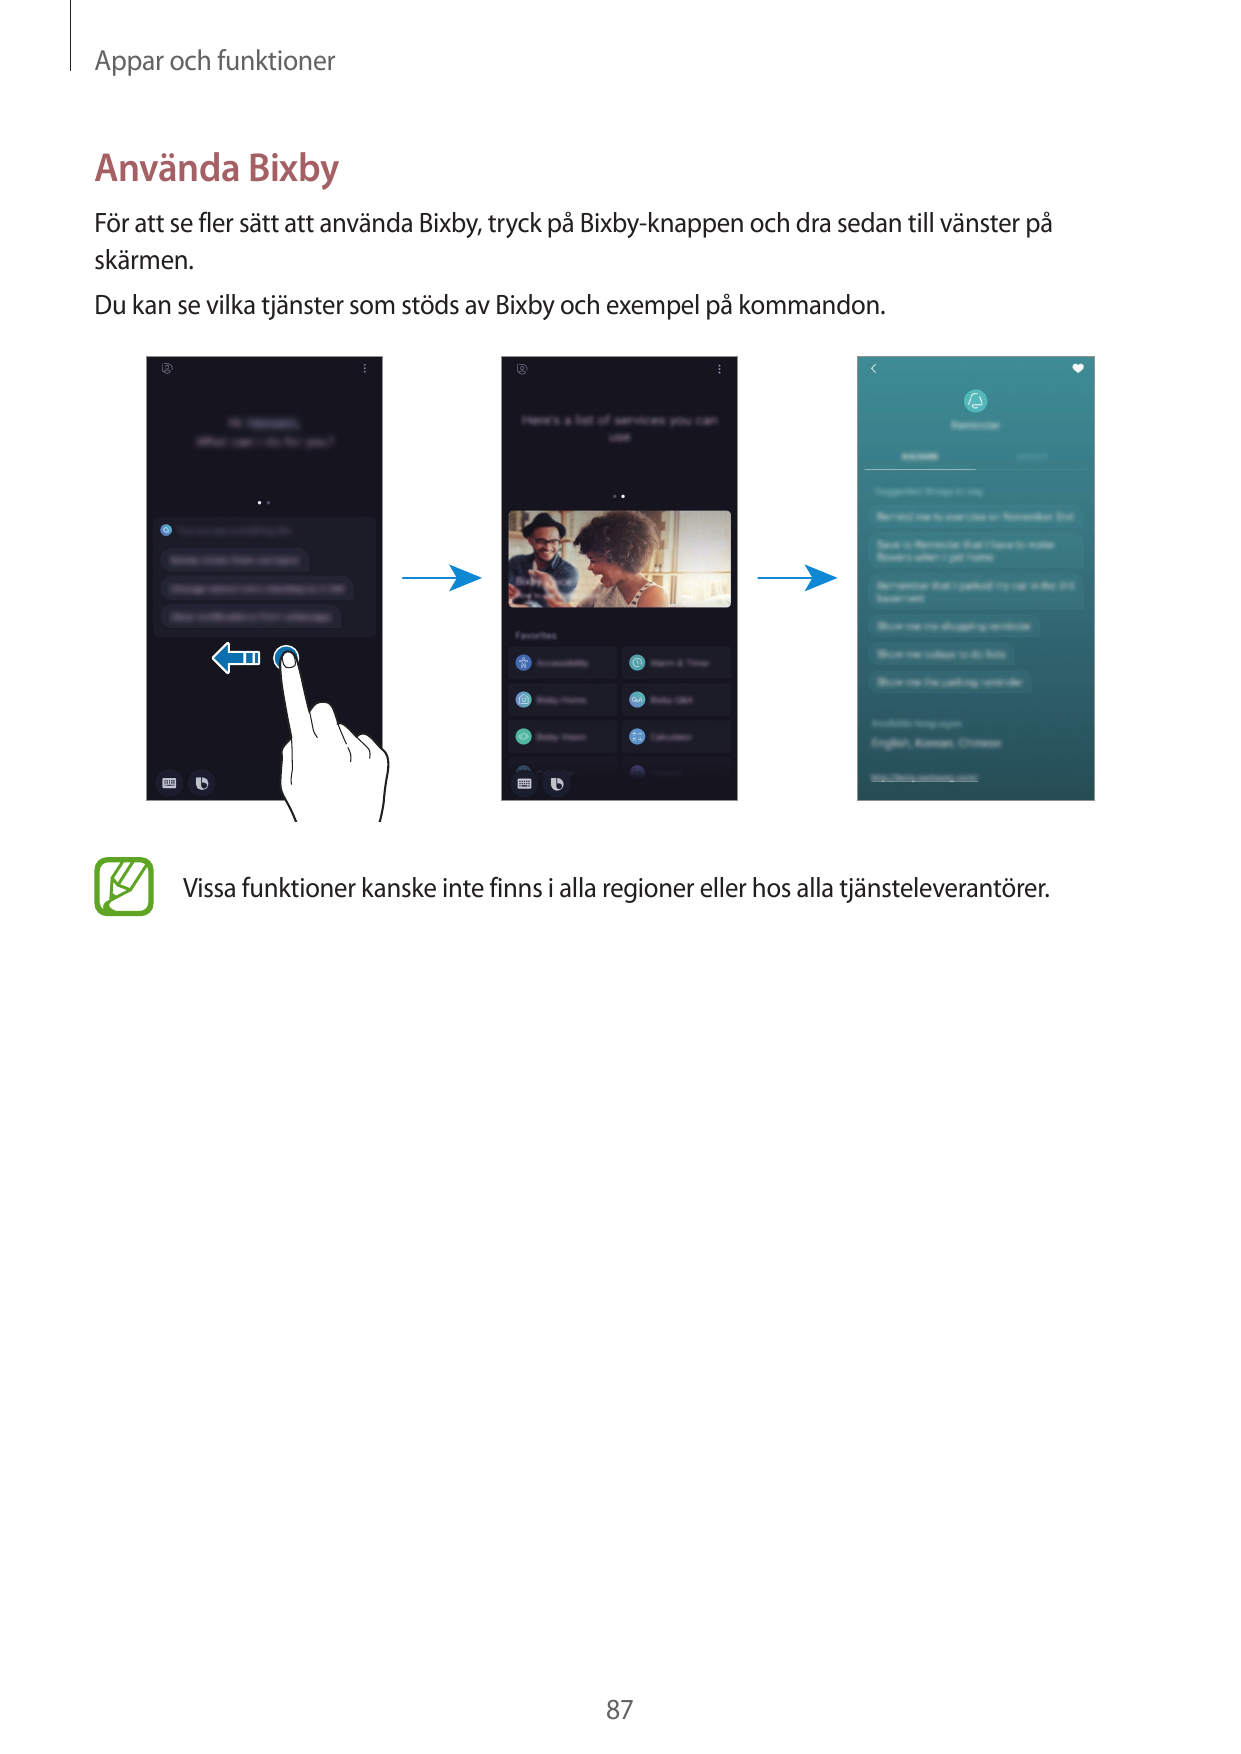 Appar och funktionerAnvända BixbyFör att se fler sätt att använda Bixby, tryck på Bixby-knappen och dra sedan till vänster påskä